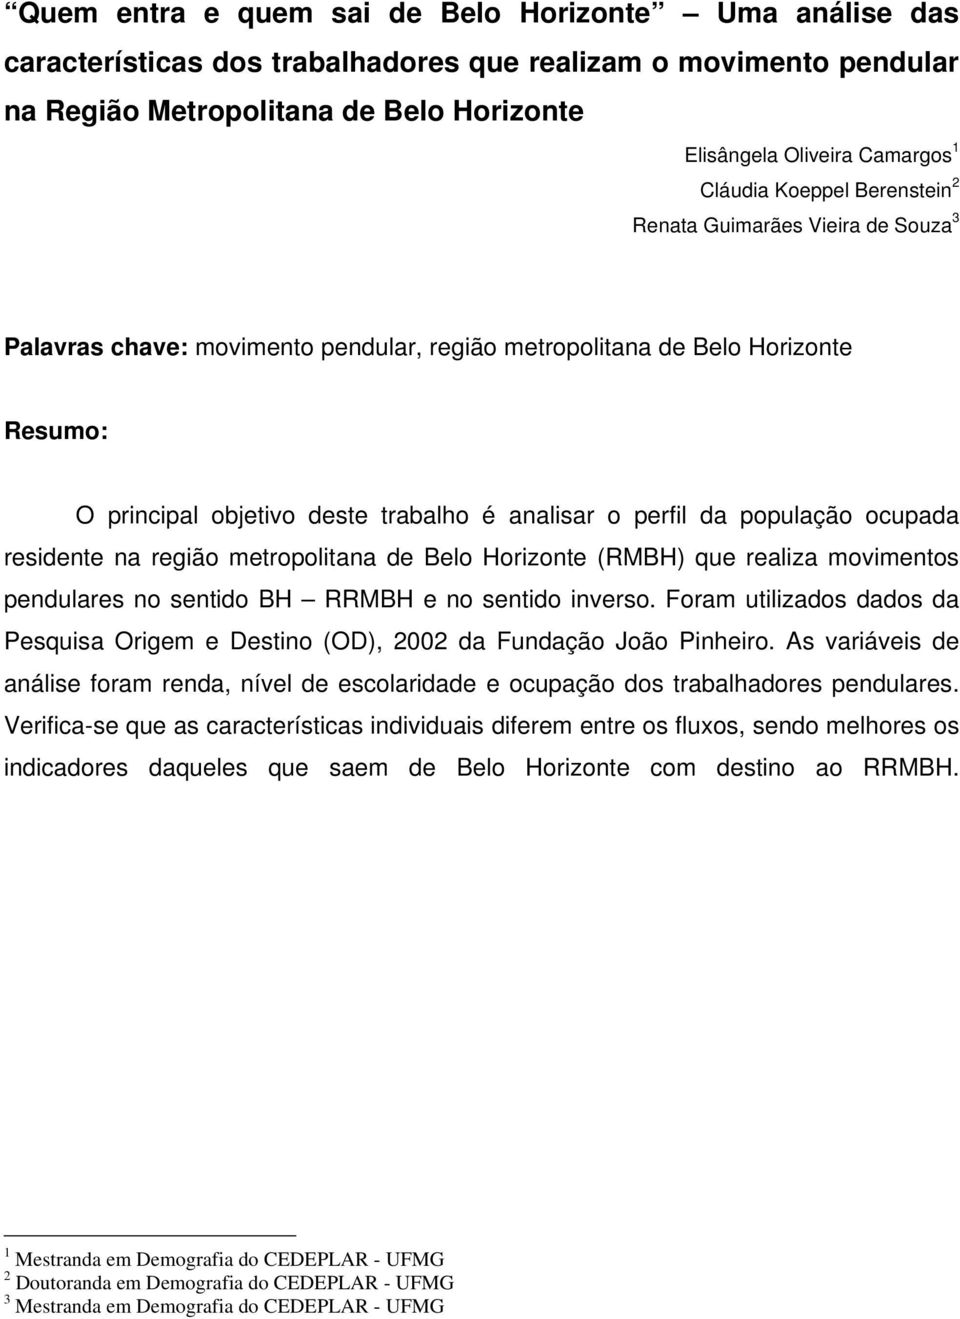 perfil da população ocupada residente na região metropolitana de Belo Horizonte (RMBH) que realiza movimentos pendulares no sentido BH RRMBH e no sentido inverso.